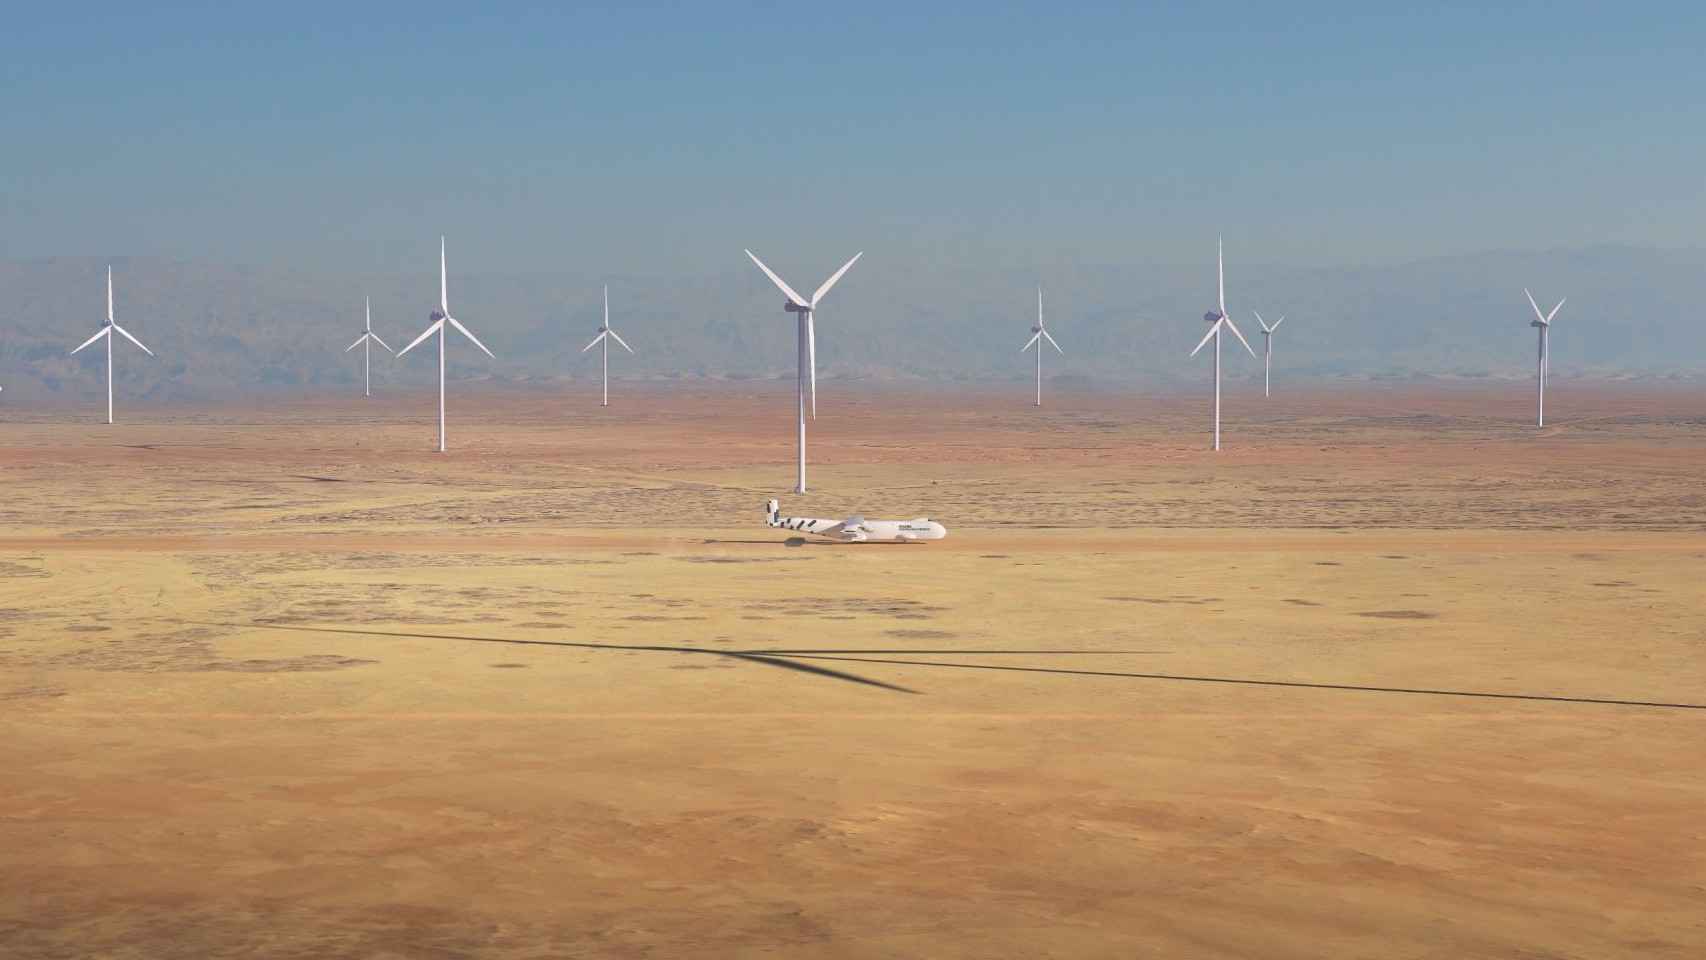 así será windrunner, el avión más grande del mundo: tan largo que puede alojar un aerogenerador en su bodega